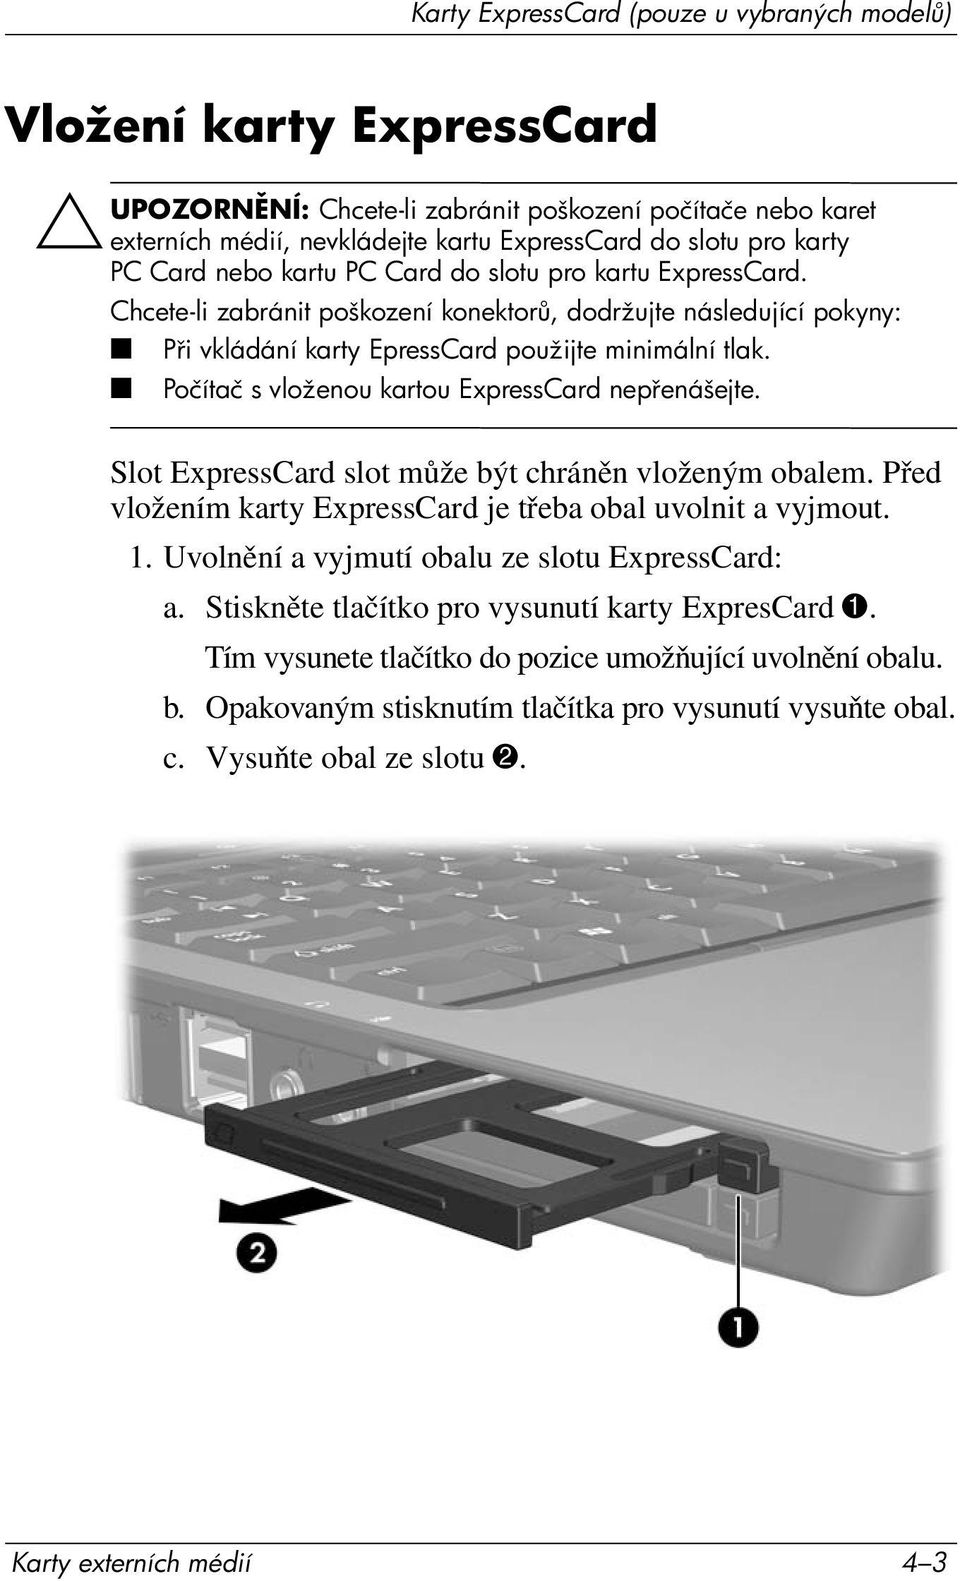 Počítač s vloženou kartou ExpressCard nep enášejte. Slot ExpressCard slot může být chráněn vloženým obalem. Před vložením karty ExpressCard je třeba obal uvolnit a vyjmout. 1.